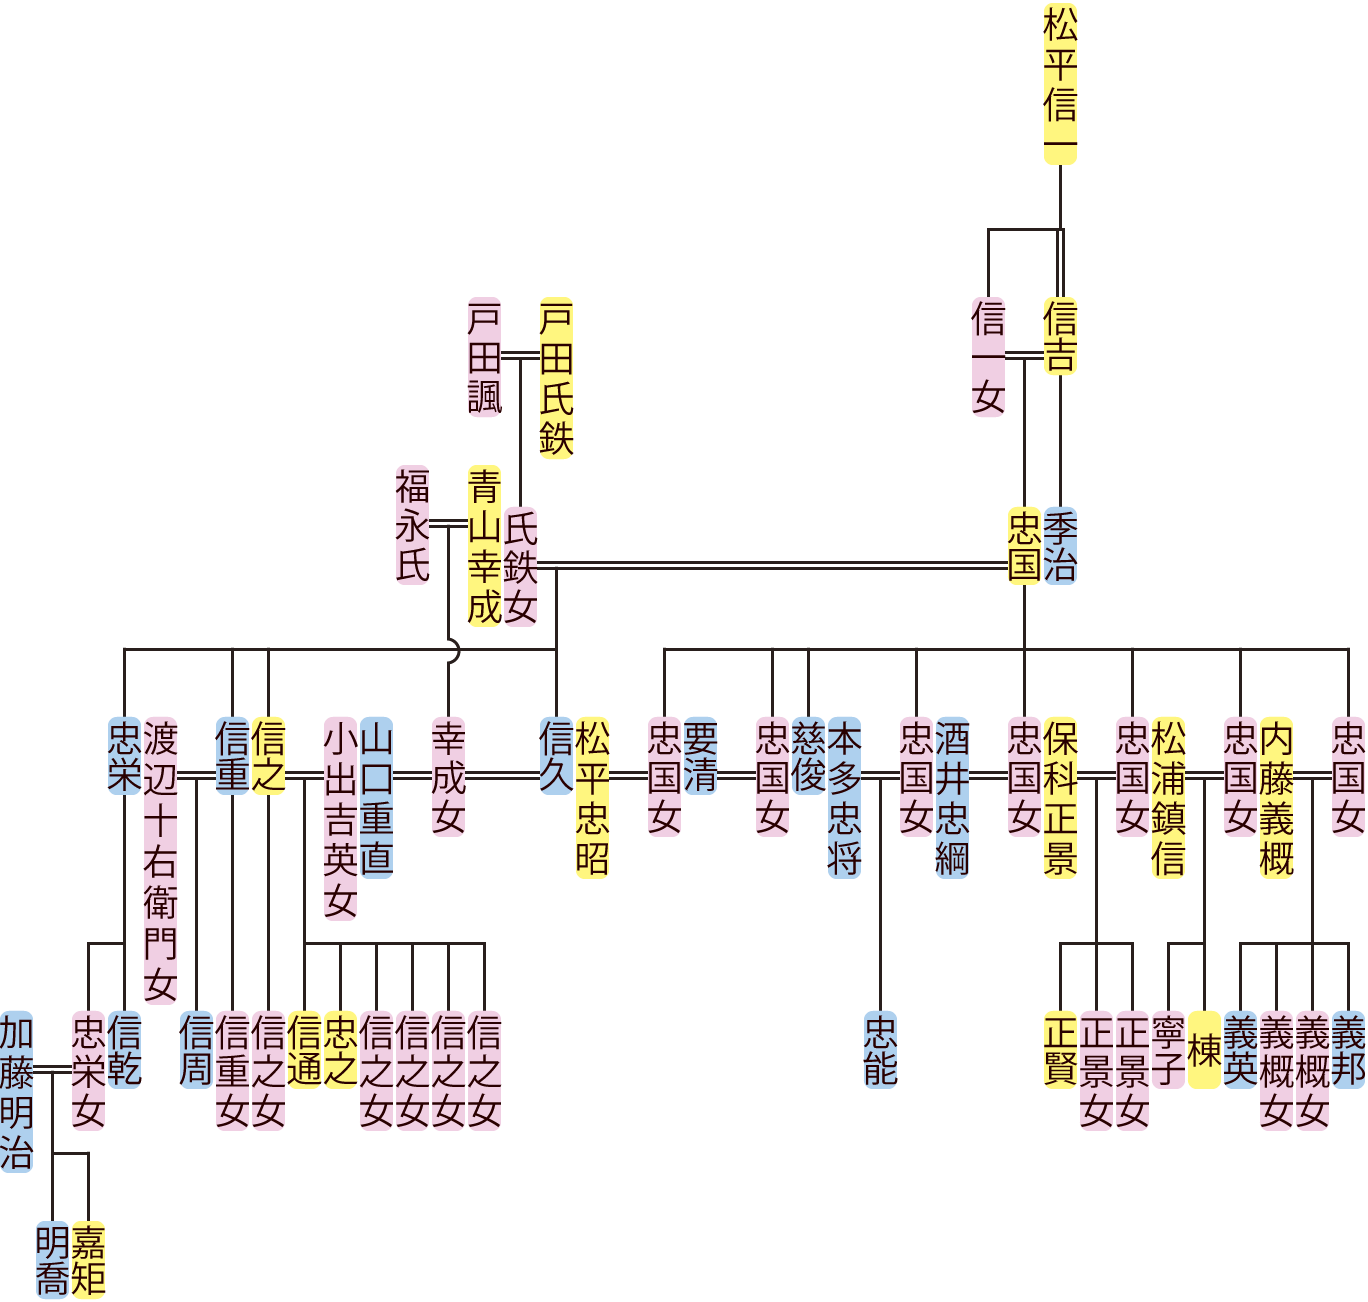 松平忠国の系図